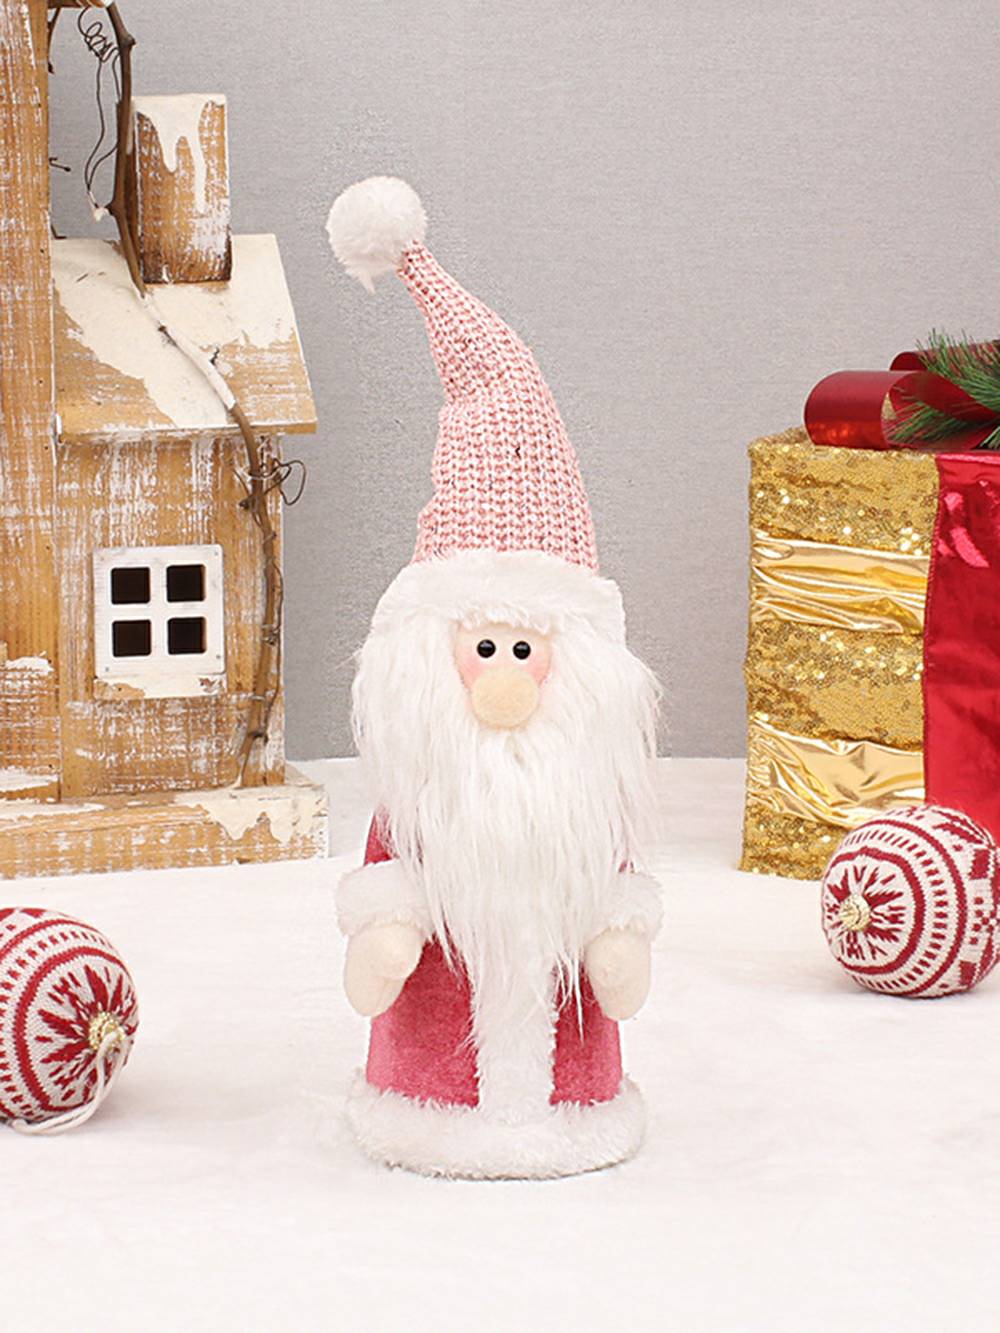 Chapéu de malha de tecido rosa boneco de neve brinquedo de pelúcia decoração de Natal